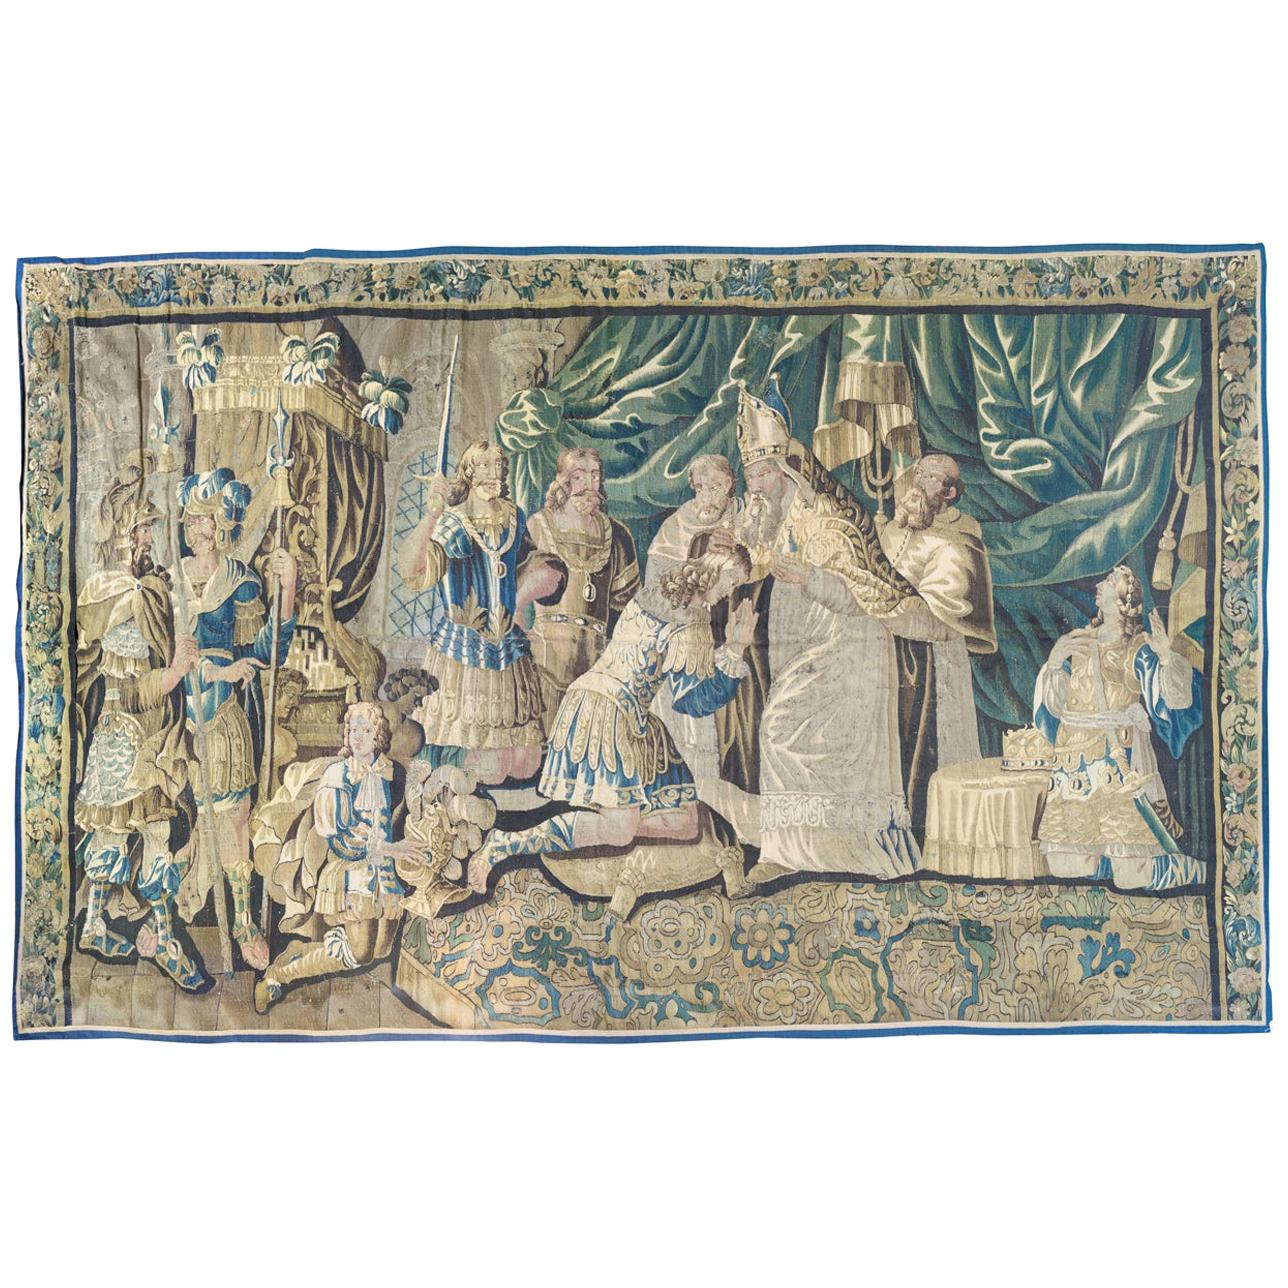 Grande tapisserie religieuse flamande ancienne du 17ème siècle